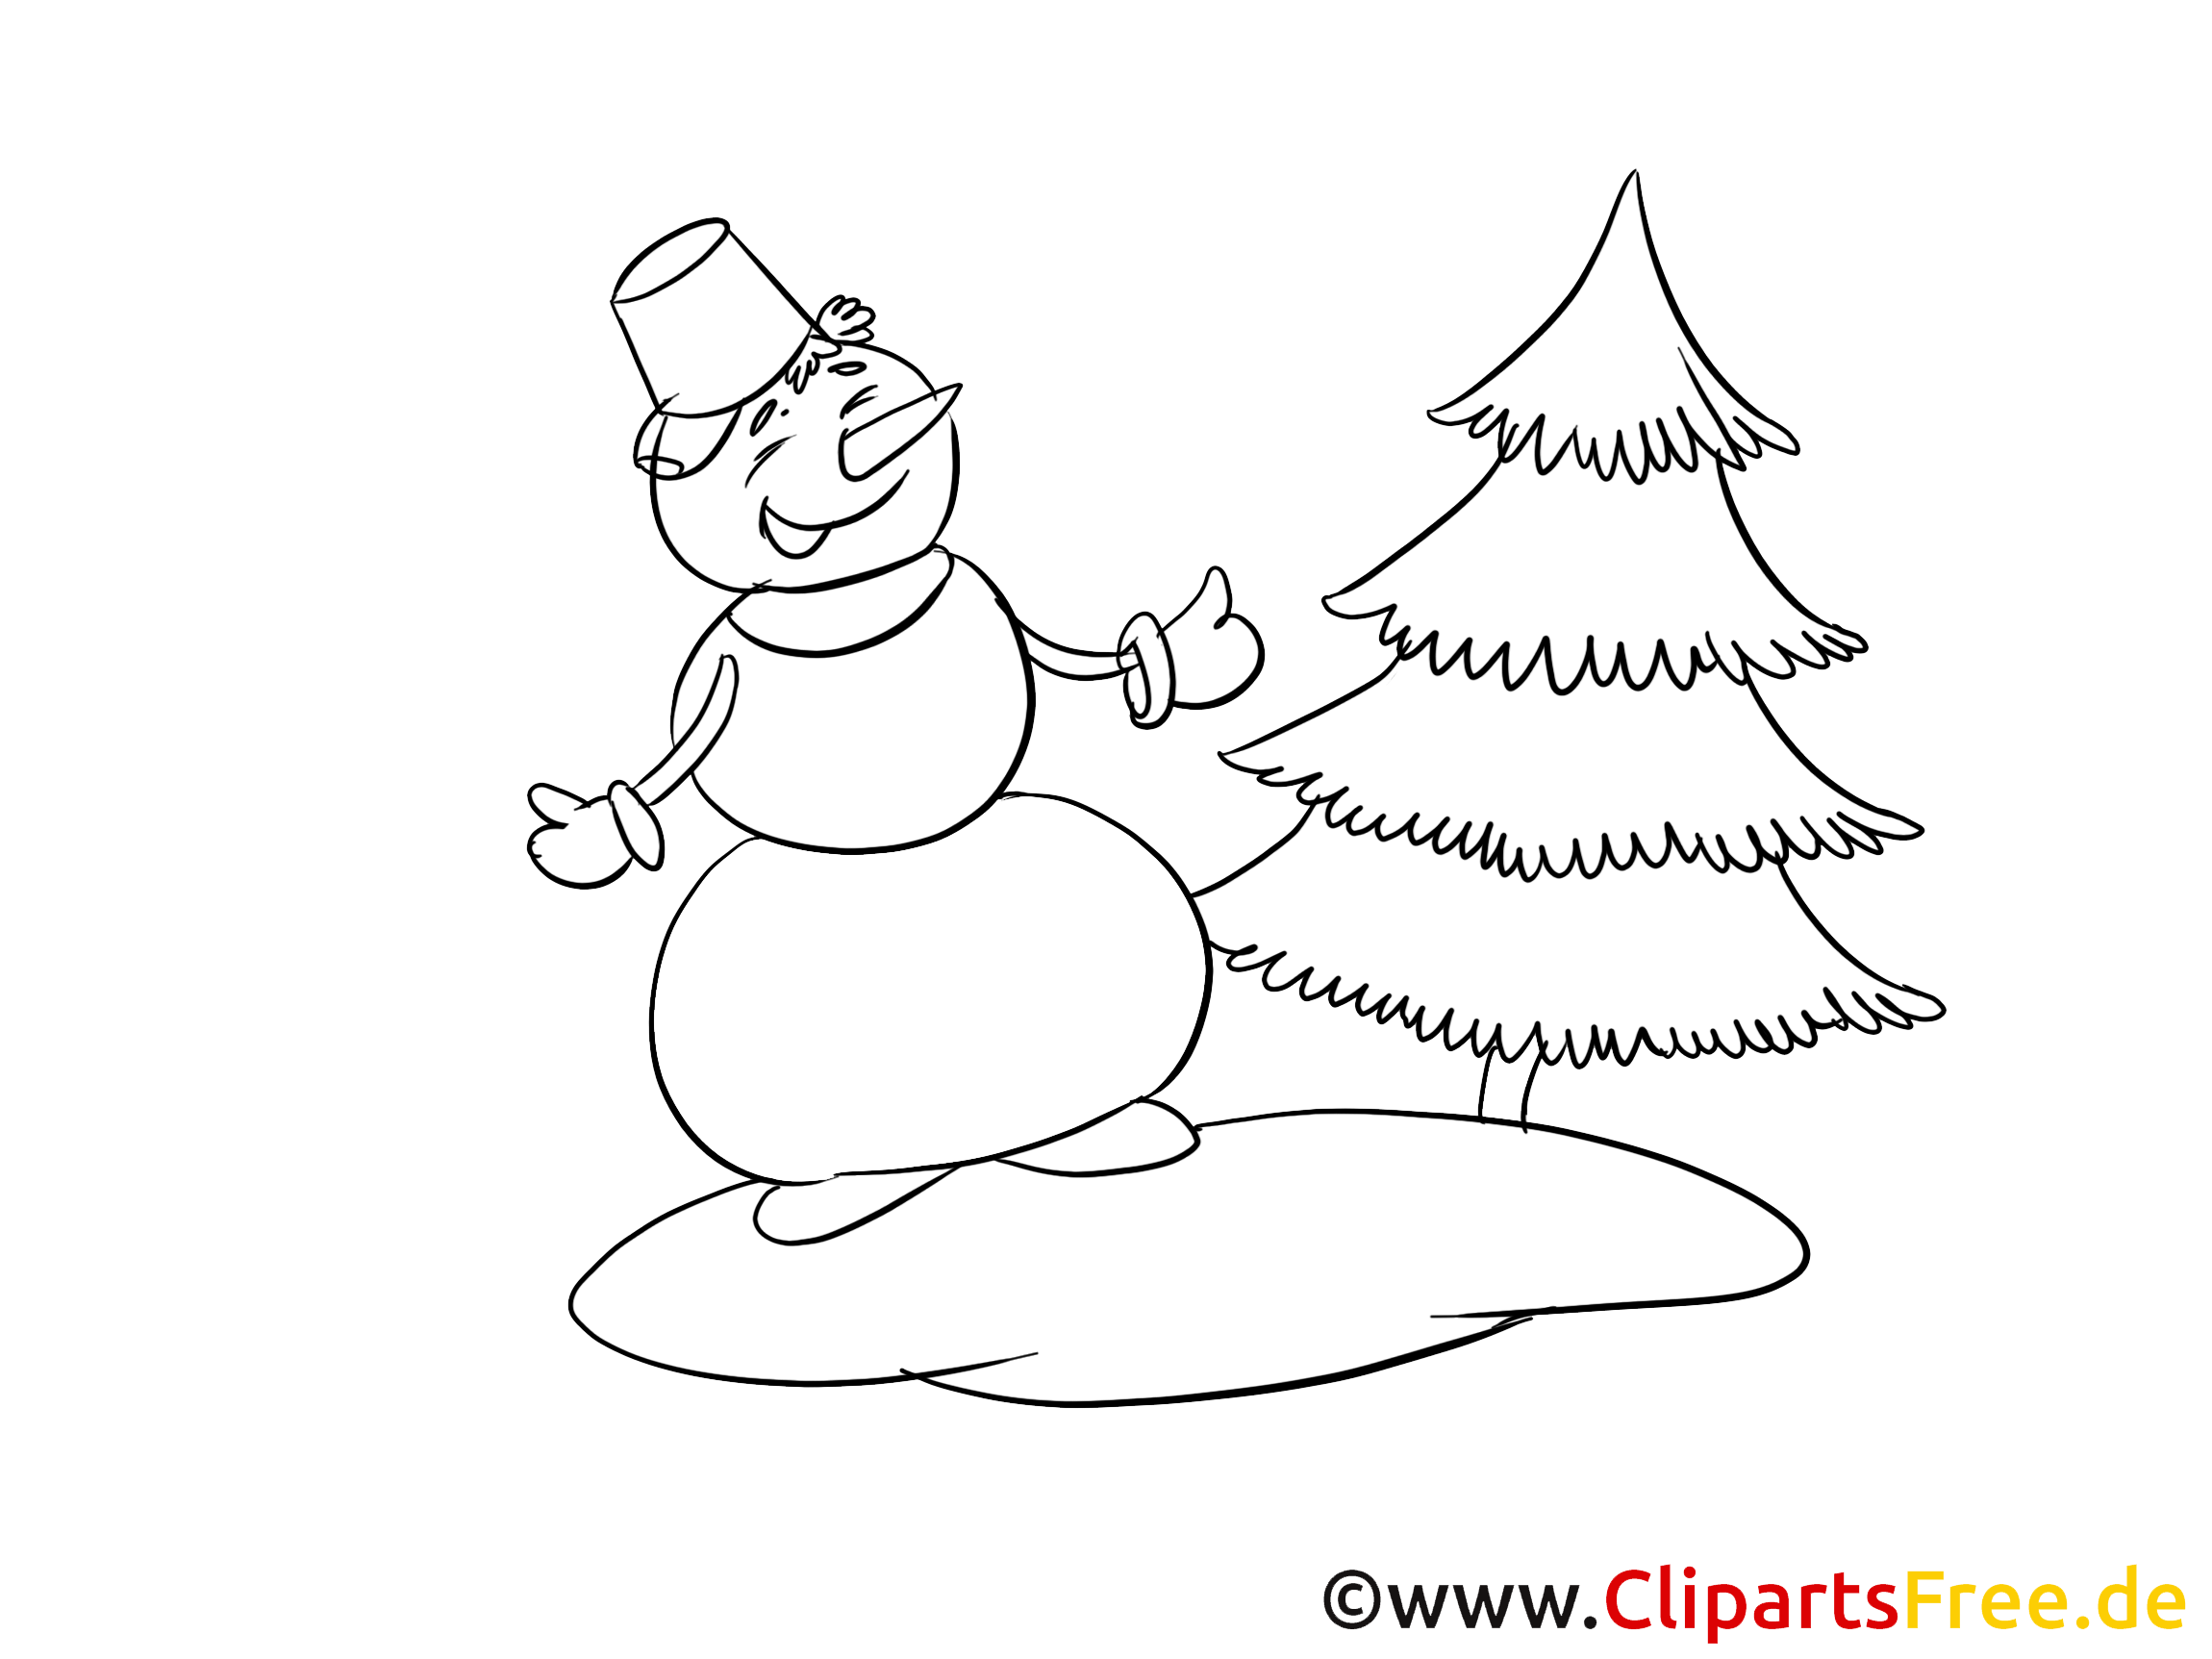 Bonhomme de neige clip art à colorier – Hiver images